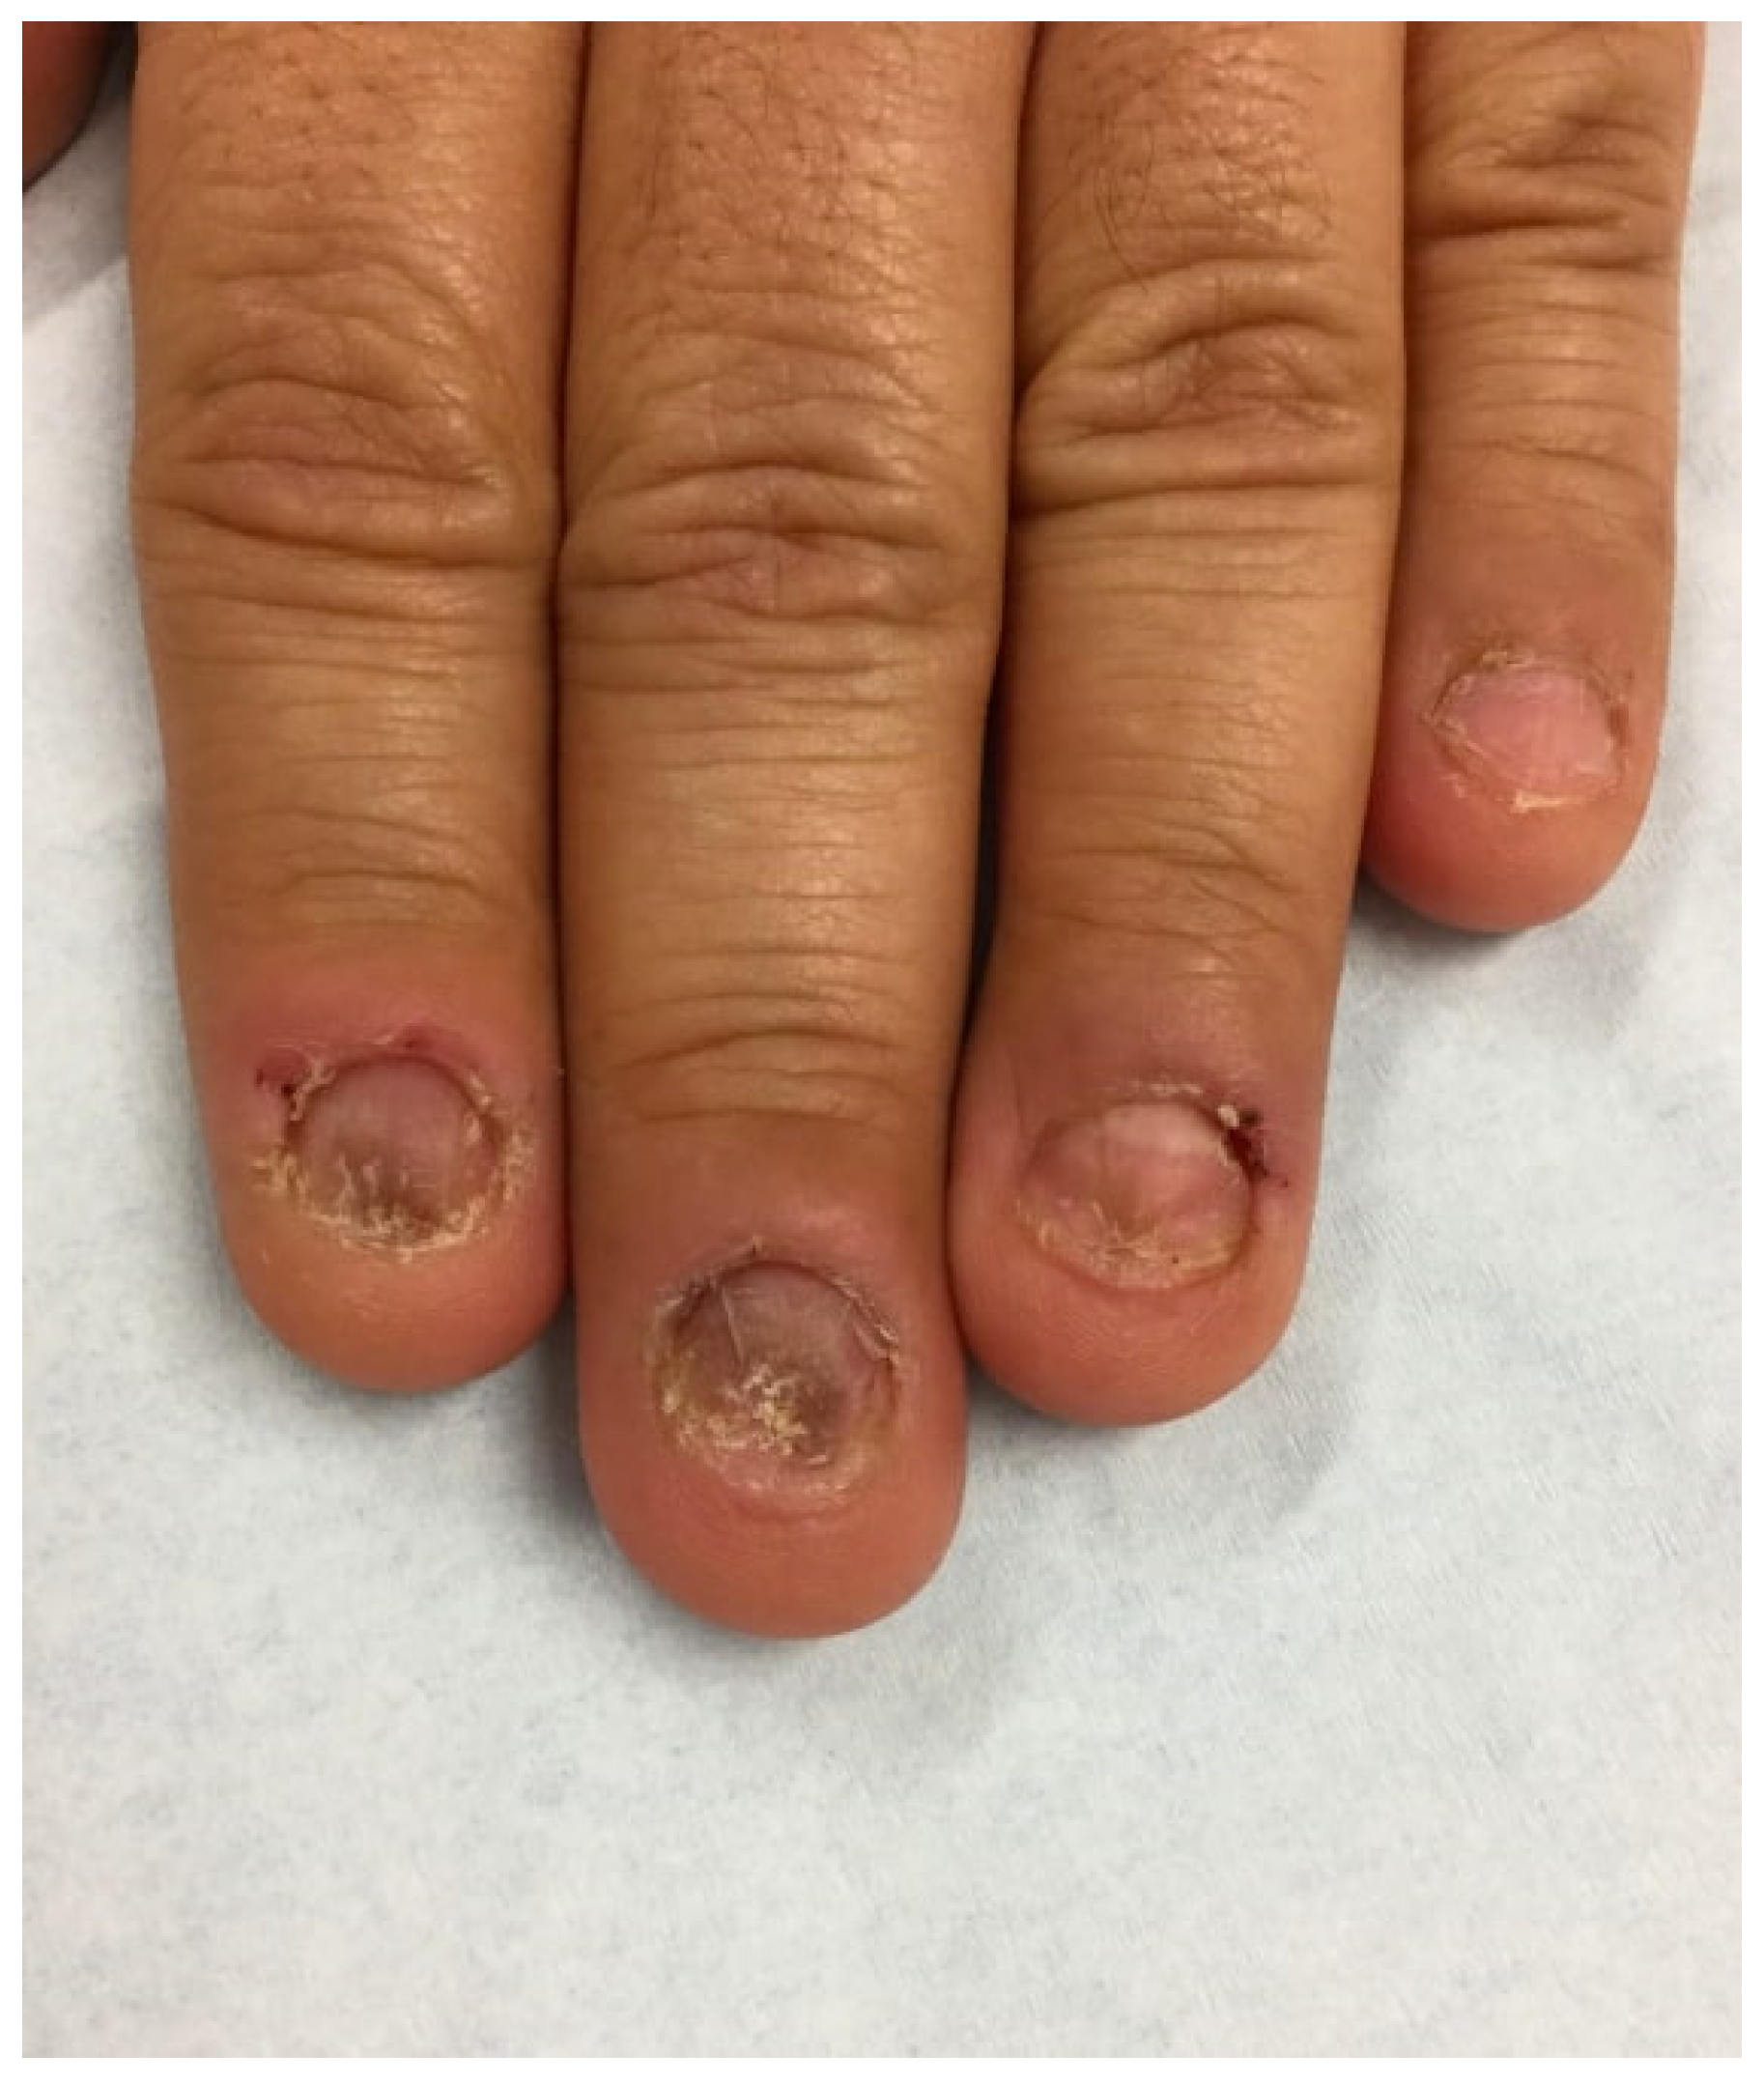 Lesion on Finger - Dermatology Advisor